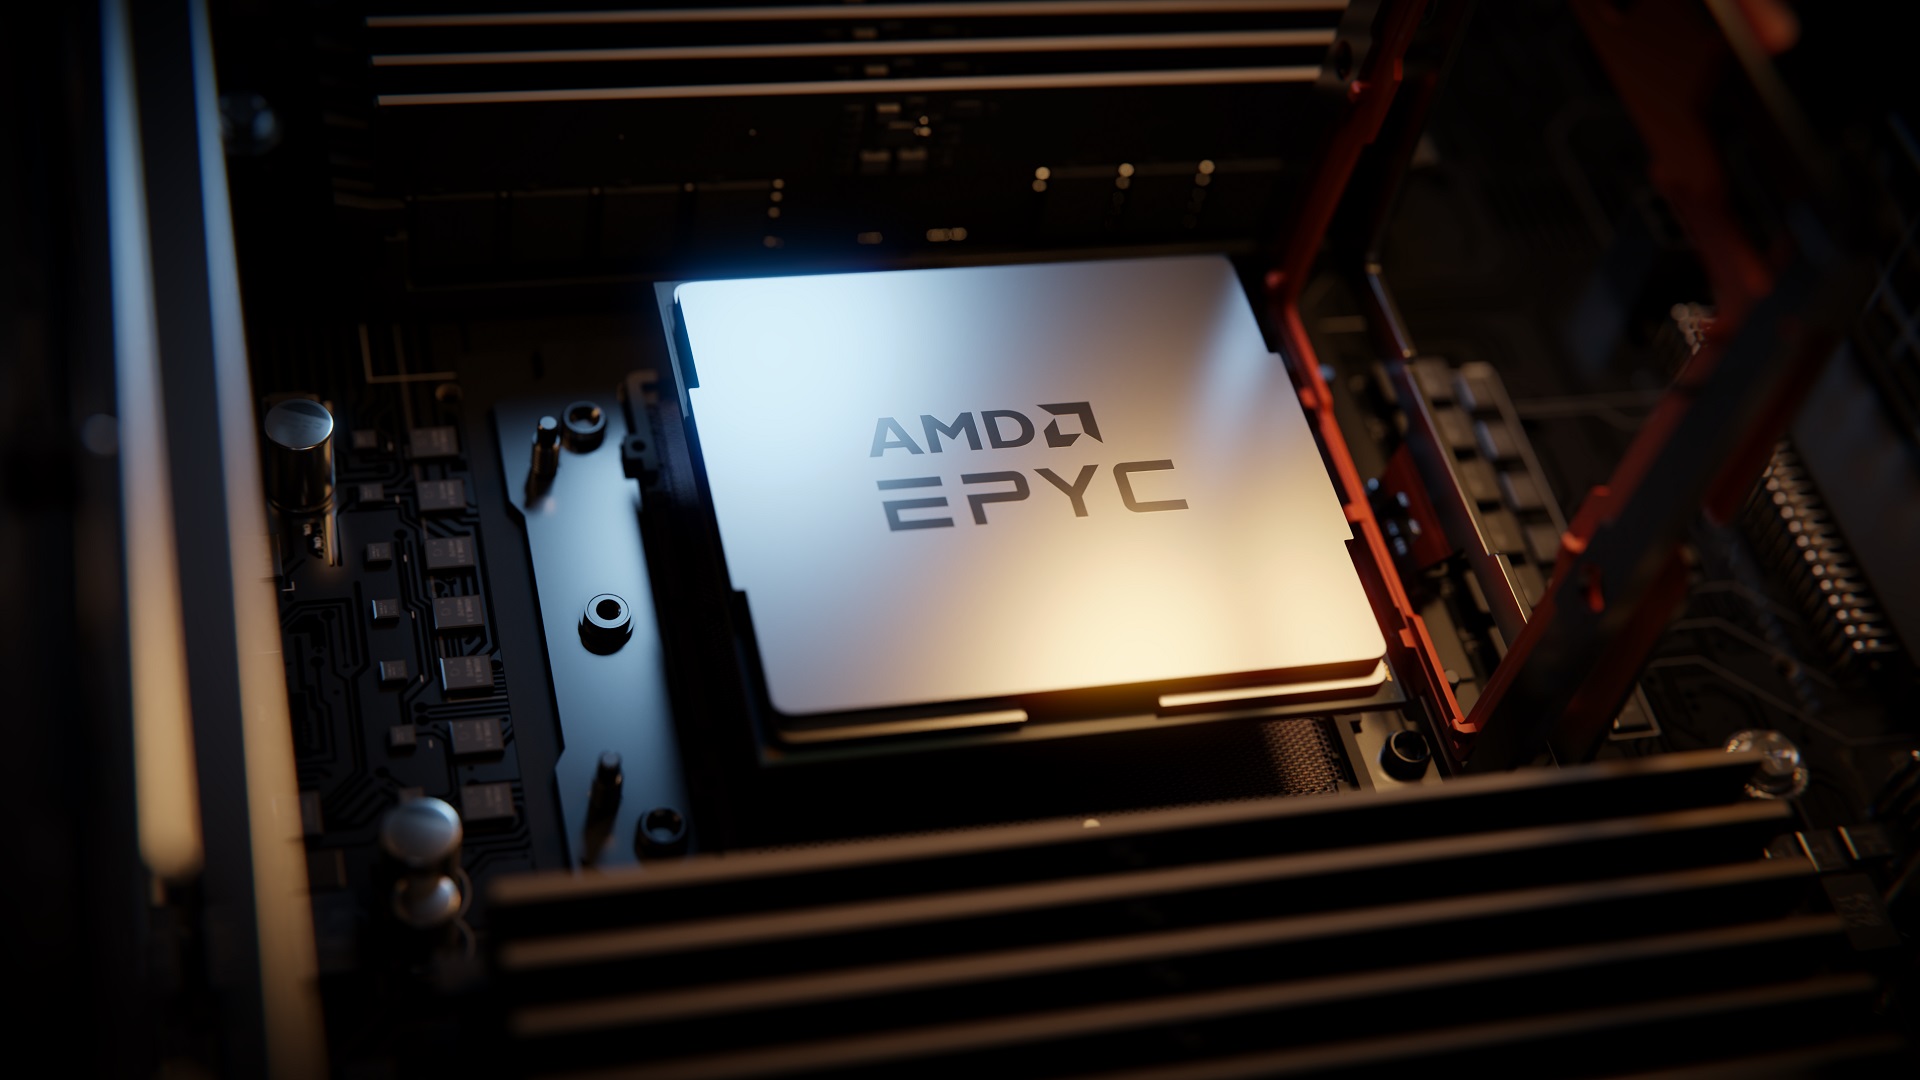 Procesor EPYC (źródło: AMD)